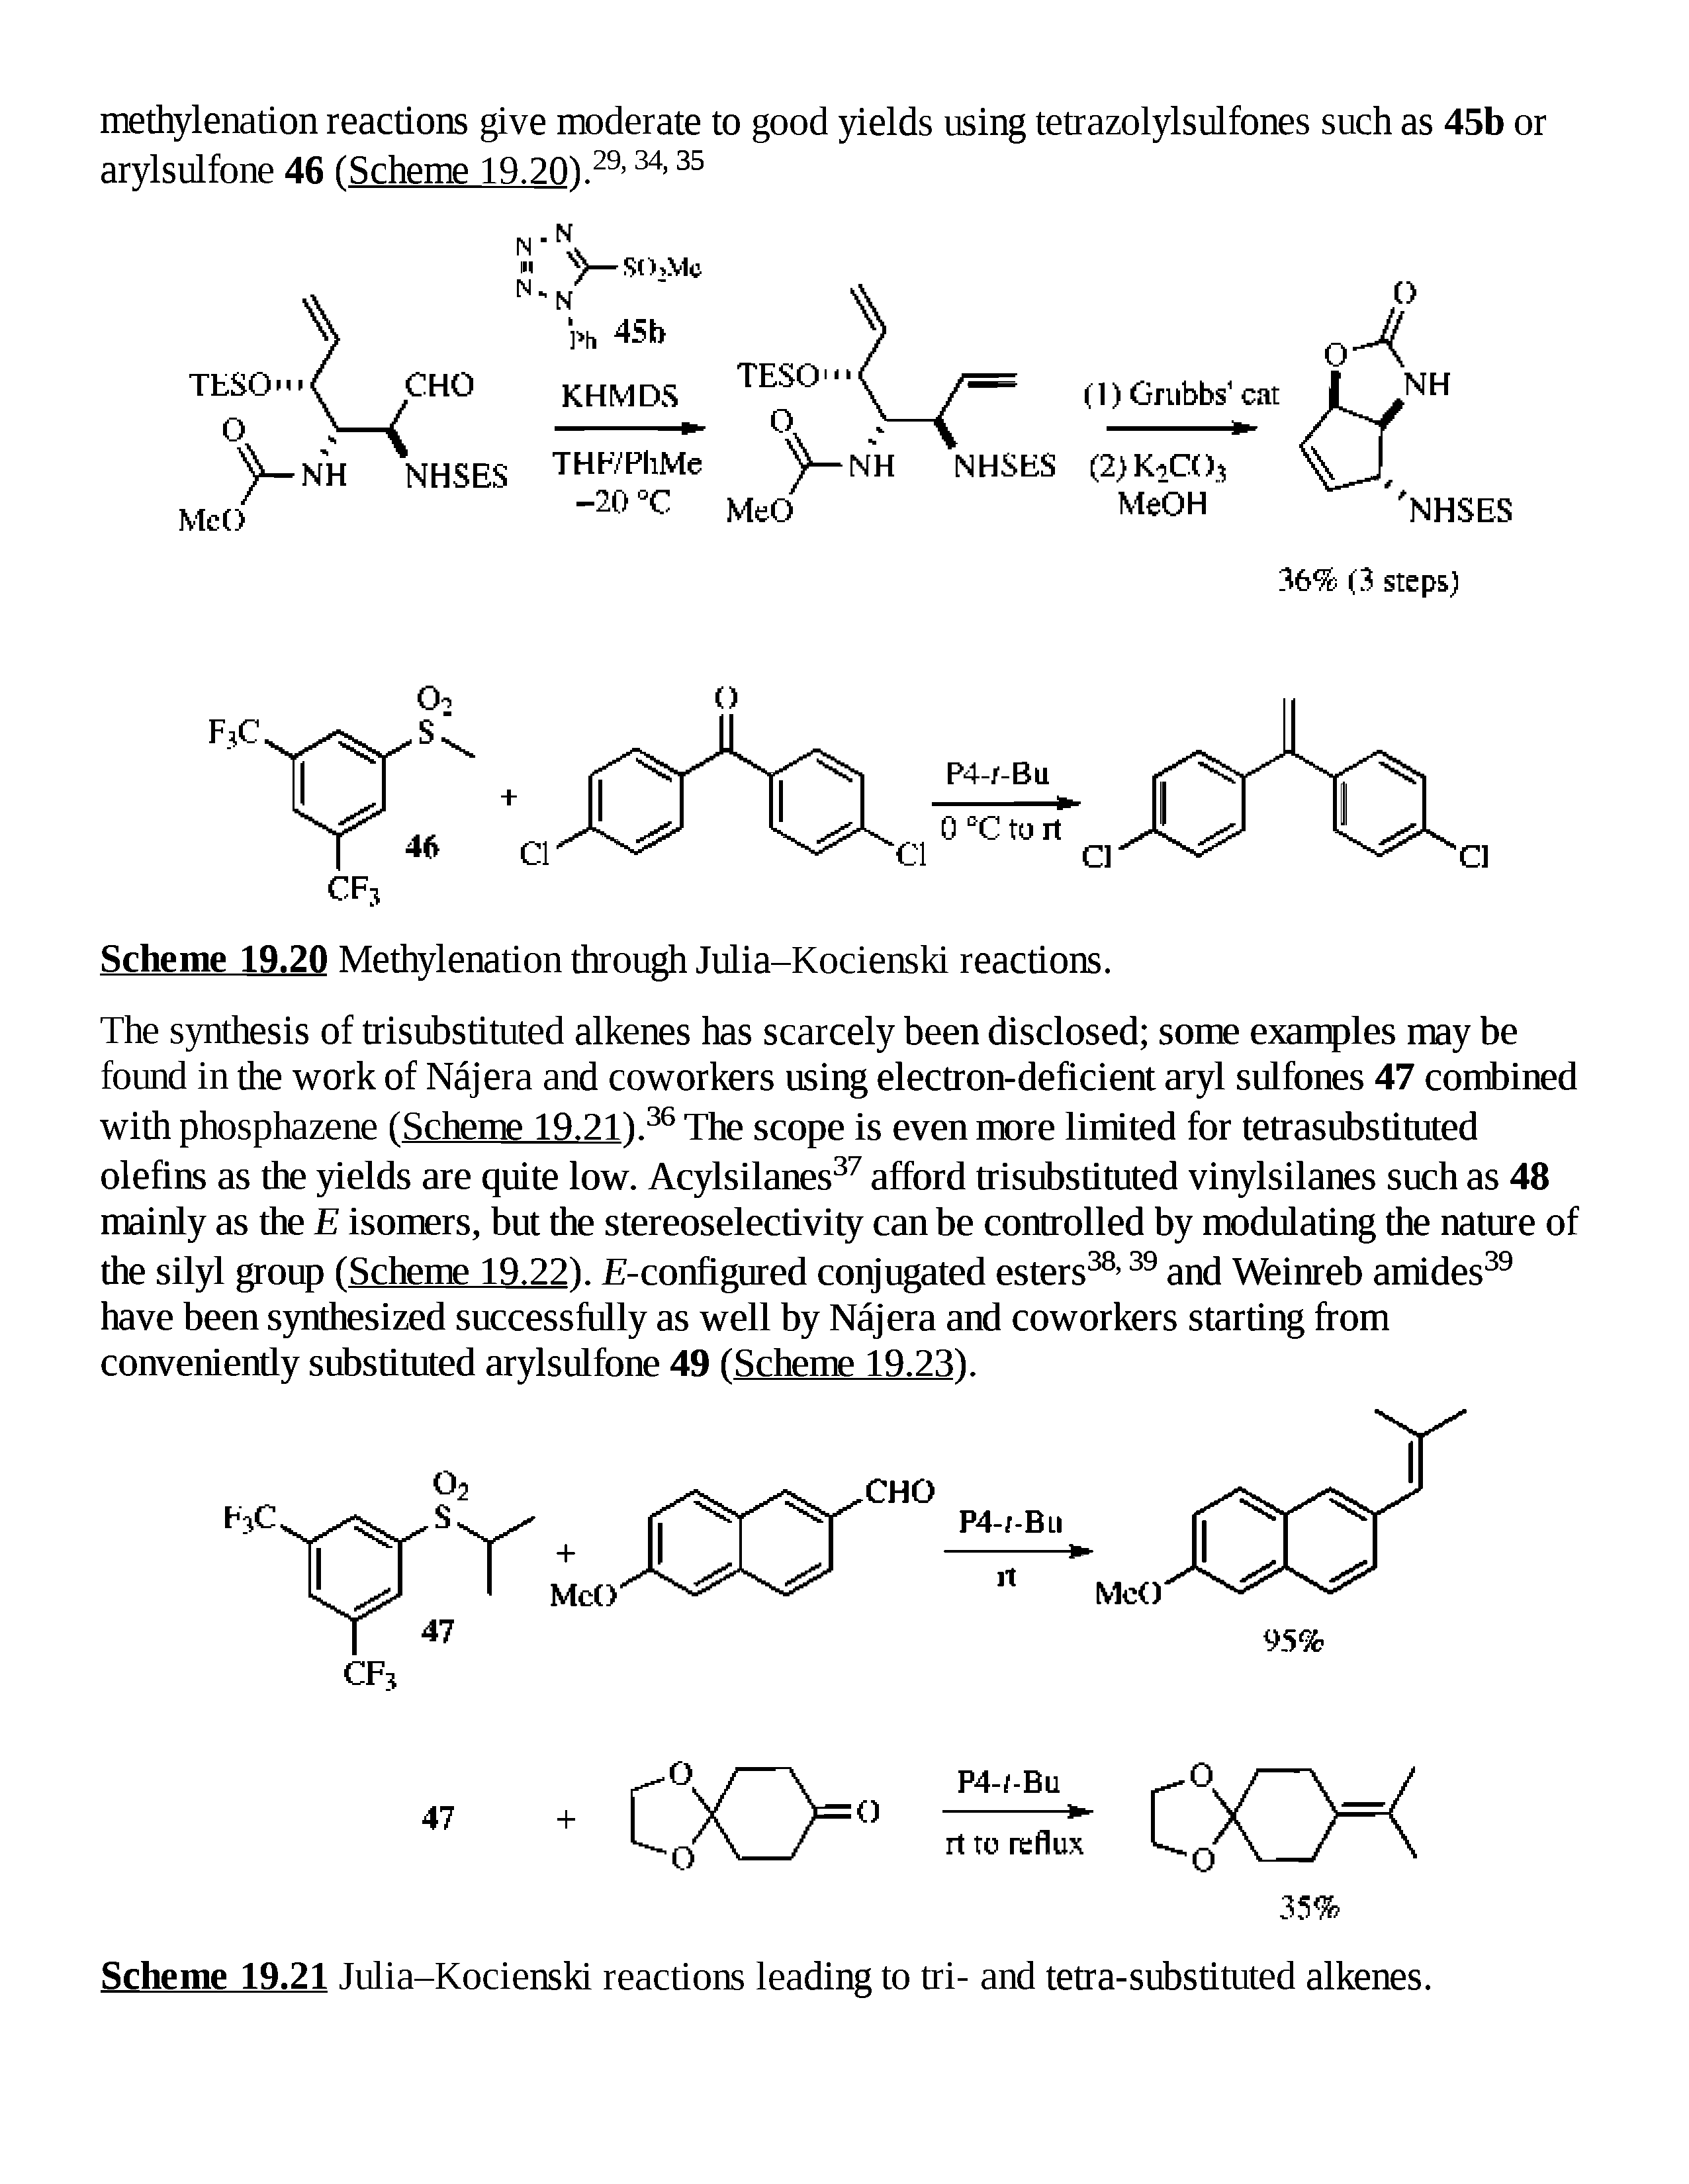 Scheme 19.20 Methylenation through Julia-Kocienski reactions.